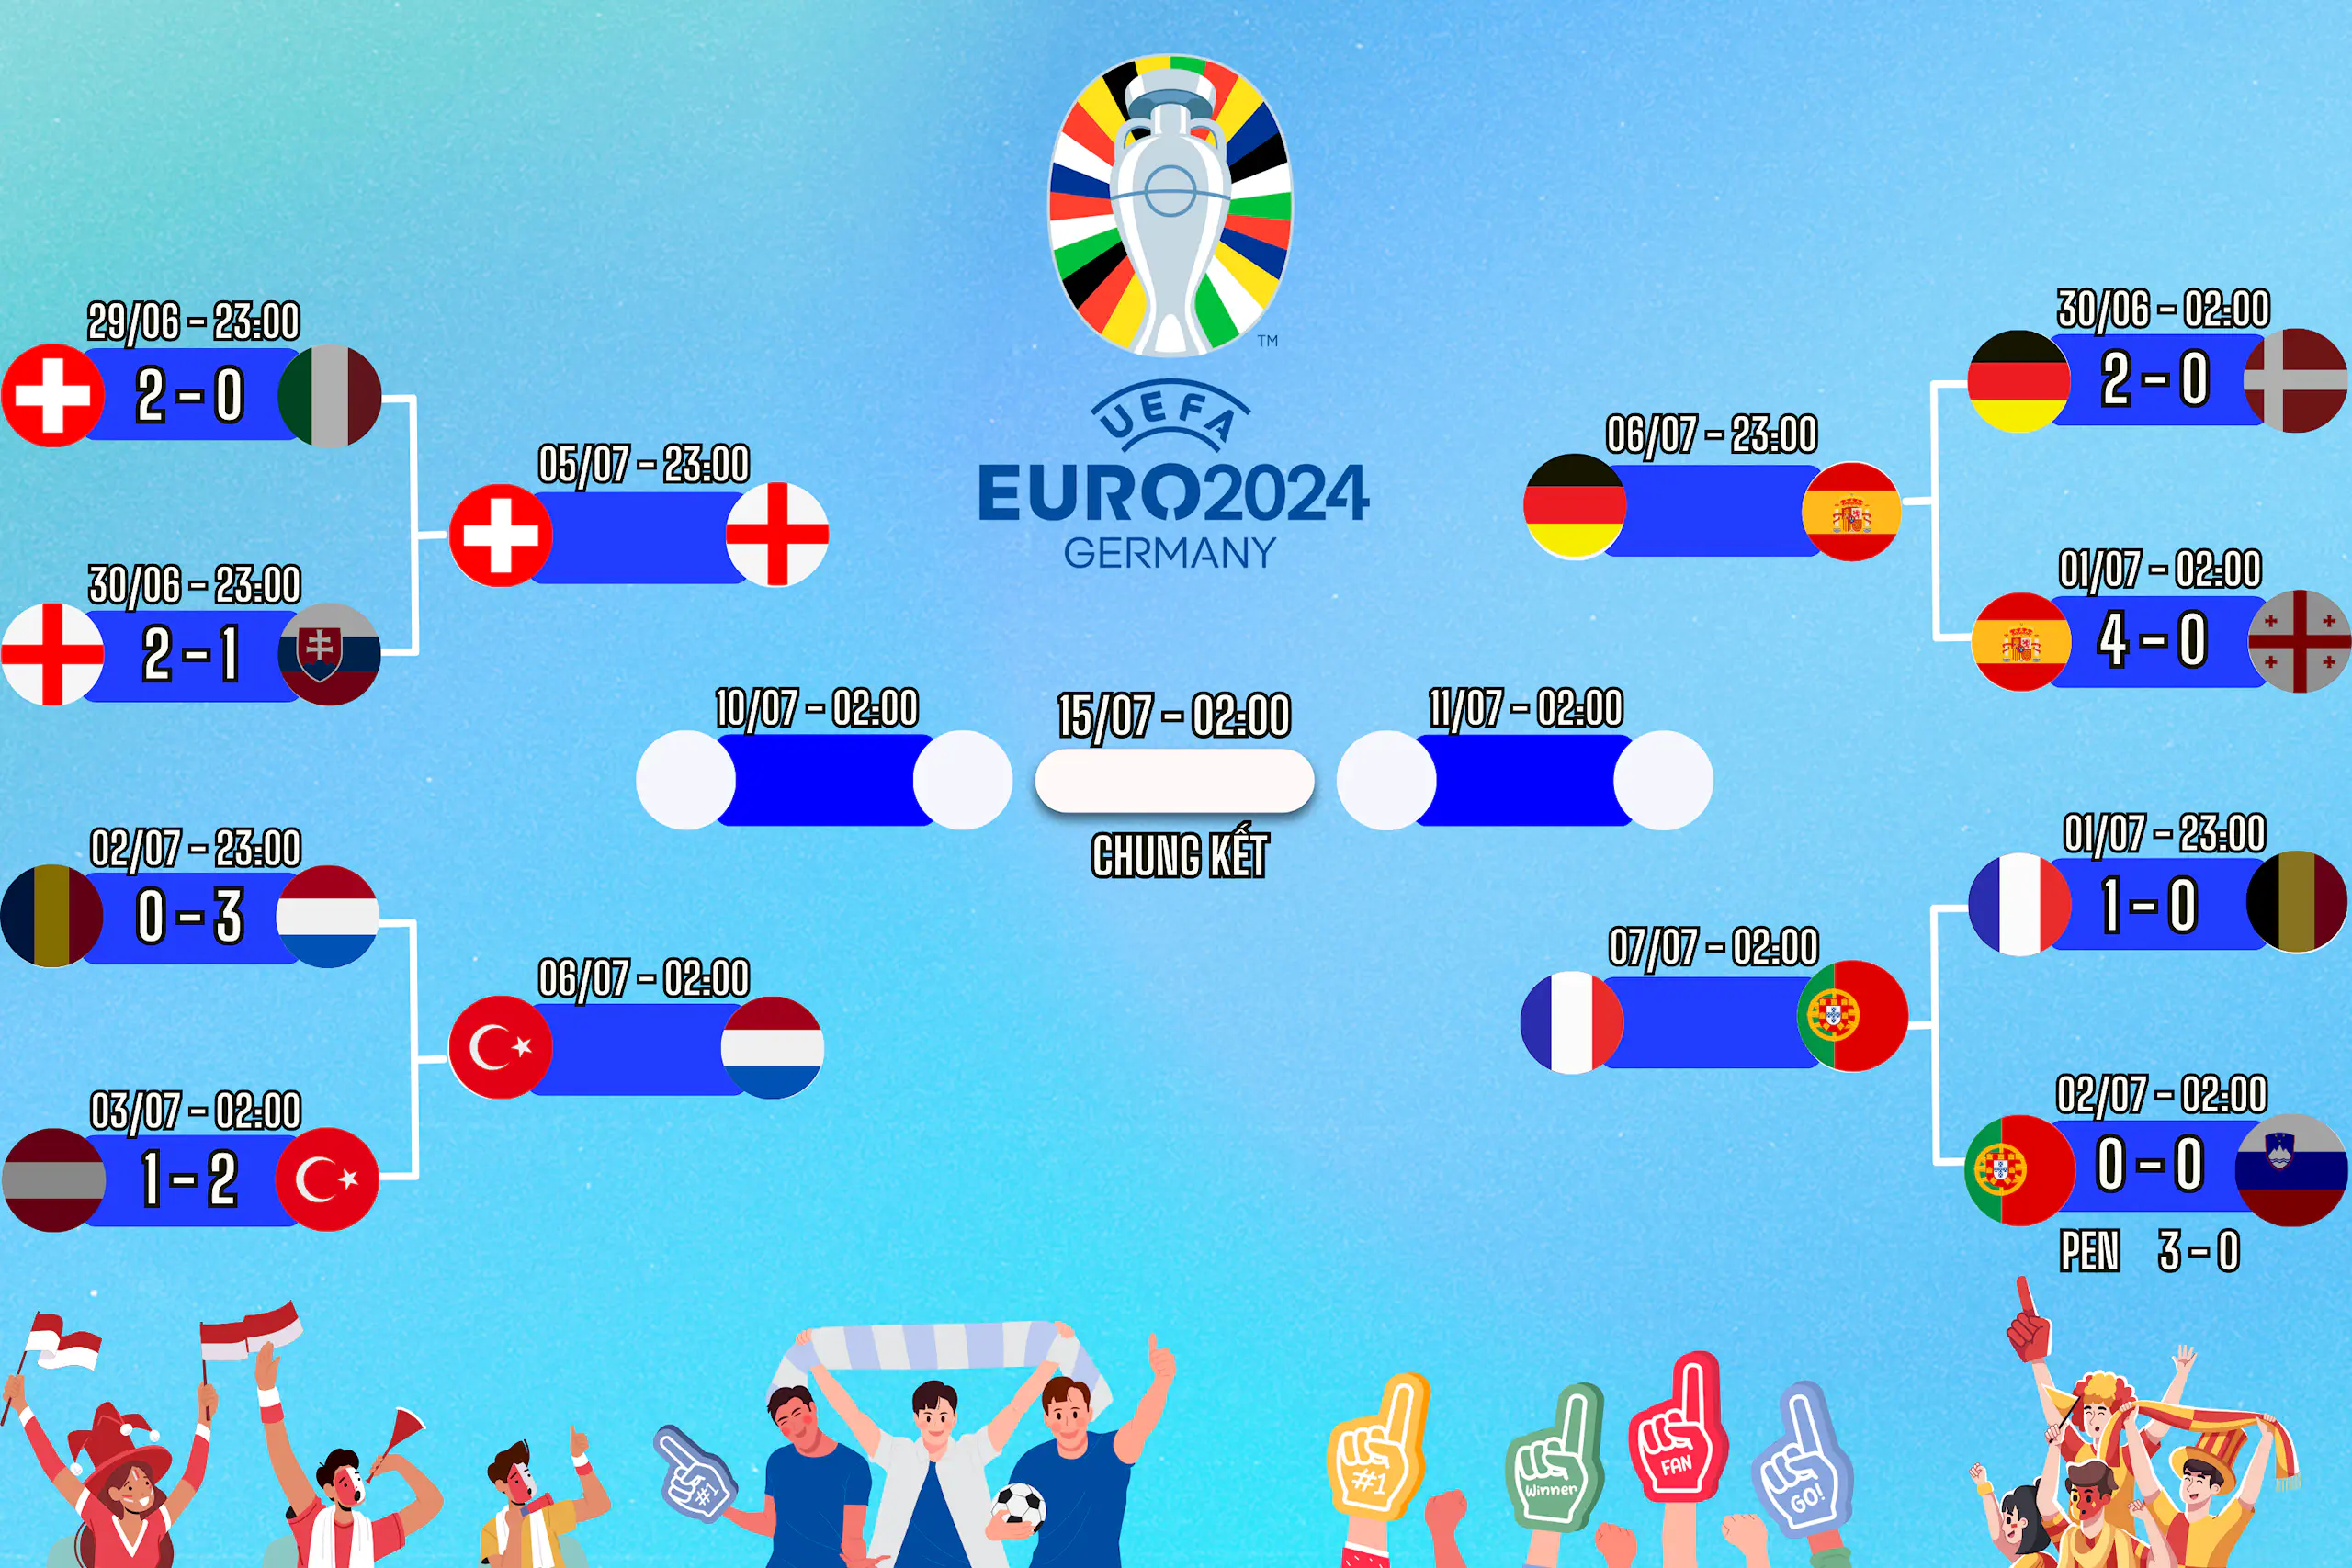 Lịch thi đấu EURO 2024 vòng 1/8 ngày 01/07, cập nhật kết quả và dự đoán tỉ số trận đấu cùng Congngheviet